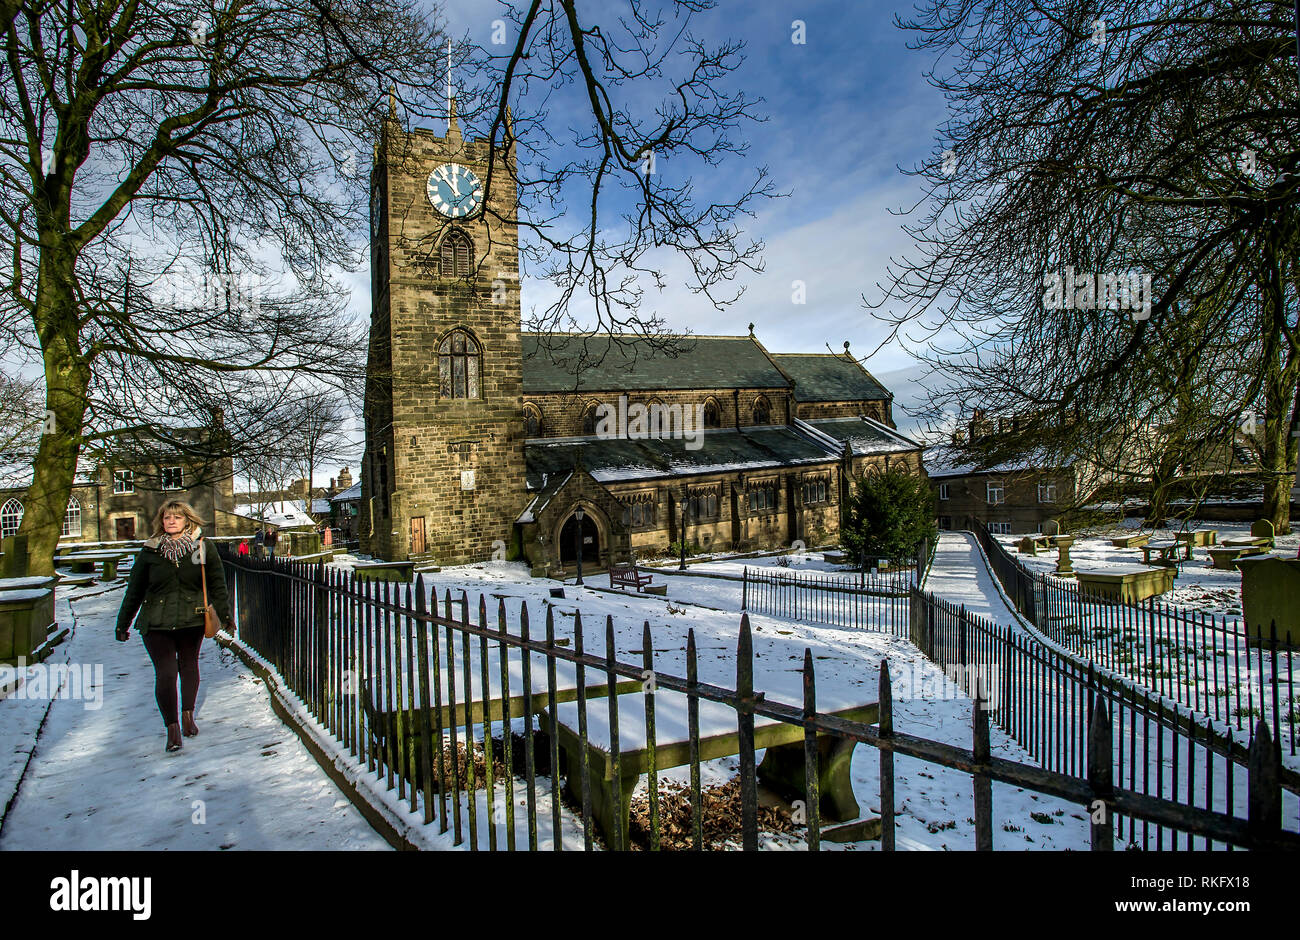 Das Dorf von Haworth in West Yorkshire, England, UK. Das Dorf war die Heimat des berühmten bront' Schwestern Ð Charlotte, Emily und Anne, die alle schrieb. Stockfoto